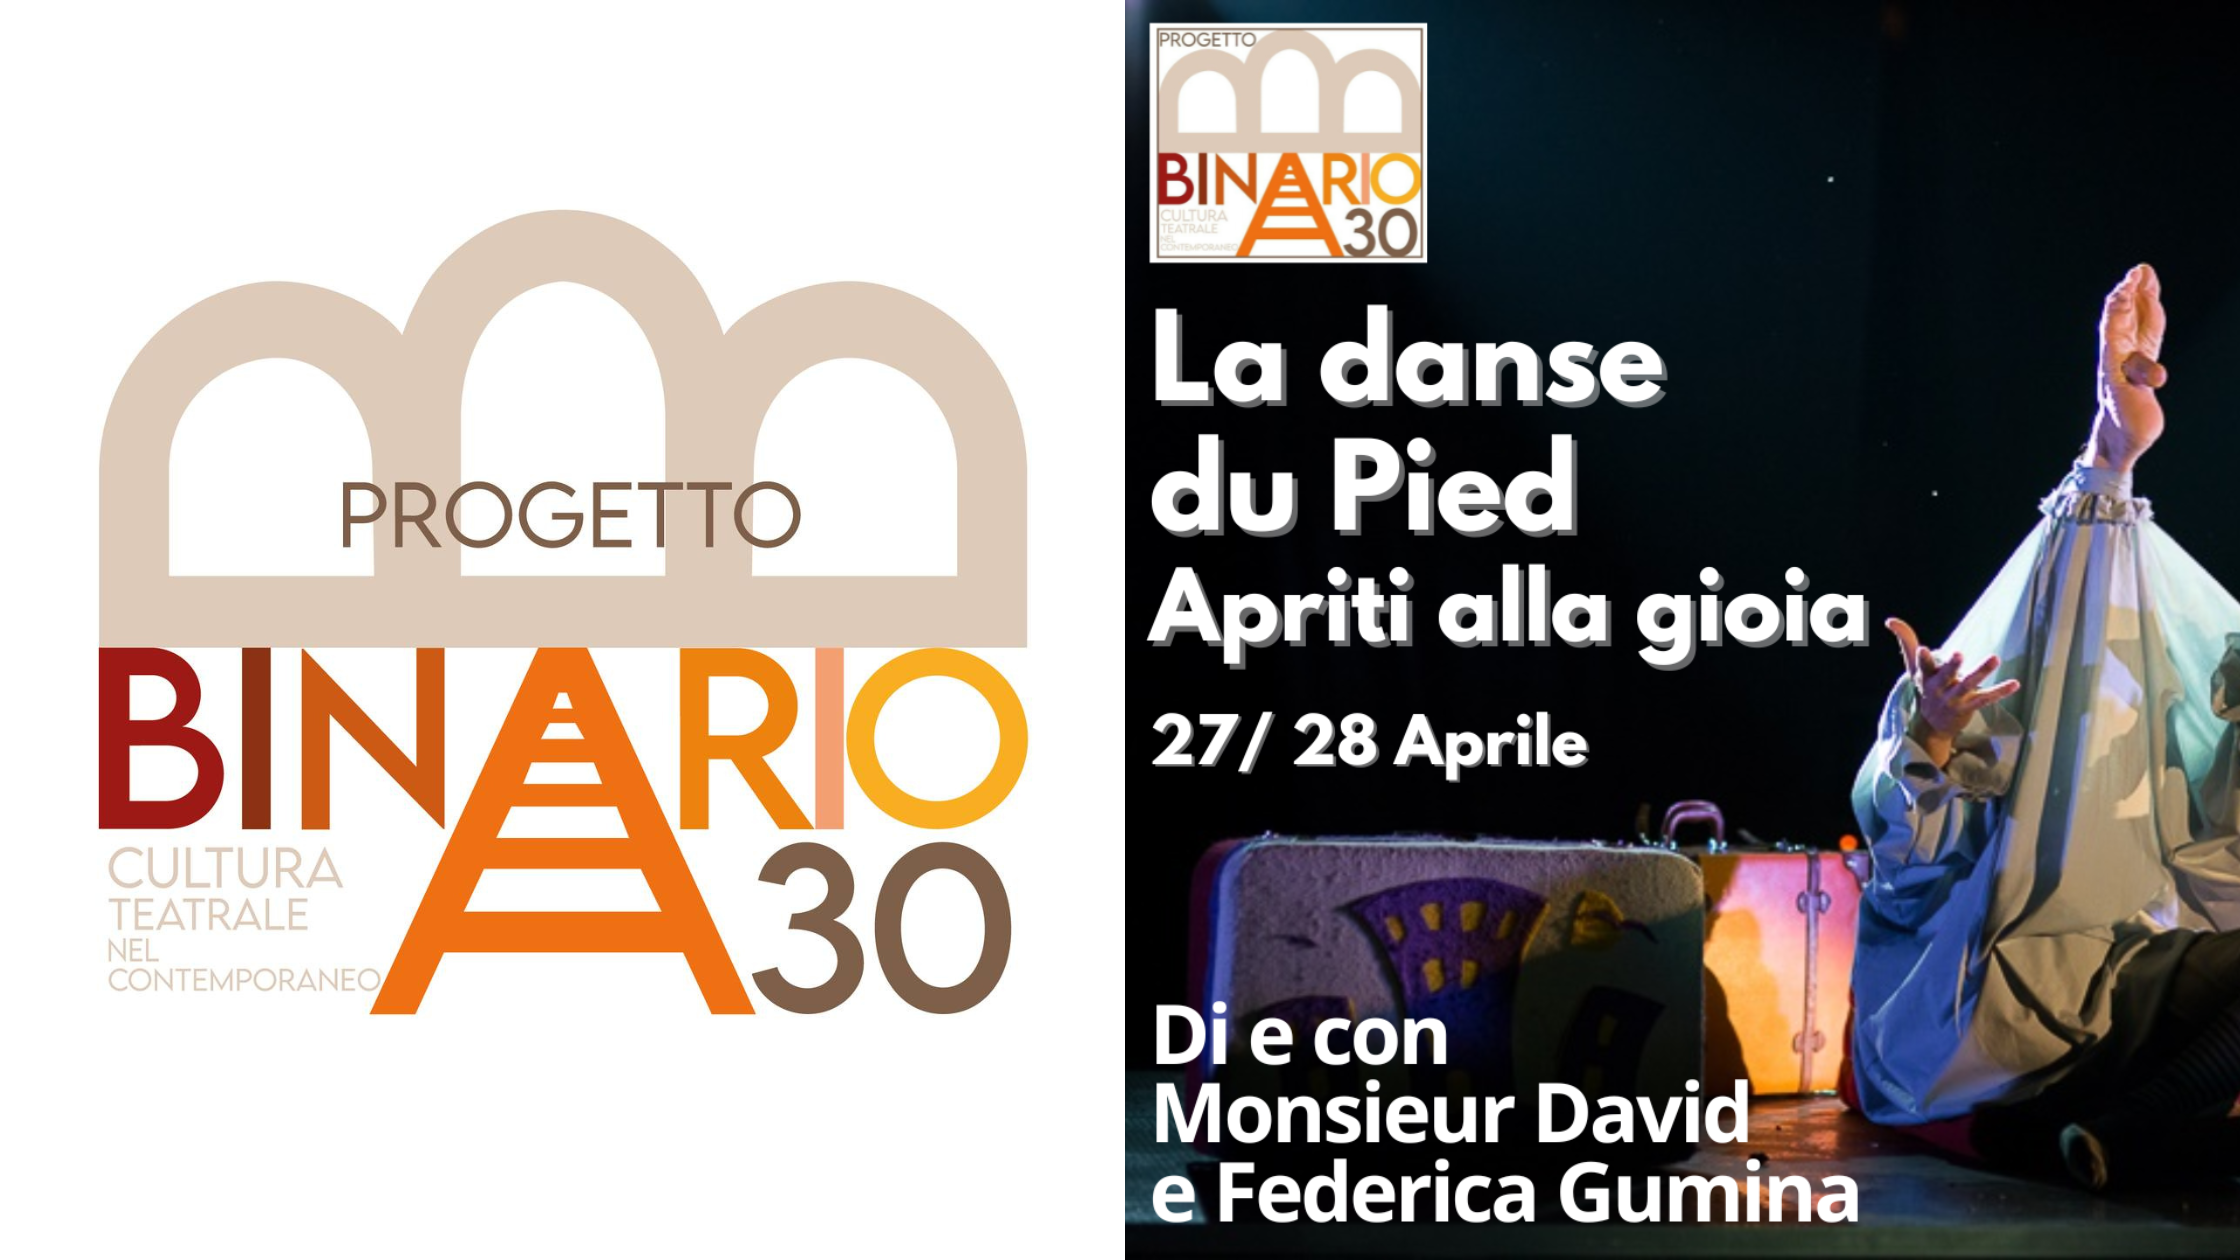 27 e 28/4/24 “La danse du Pied – Apriti alla gioia” al Teatro Binario 30